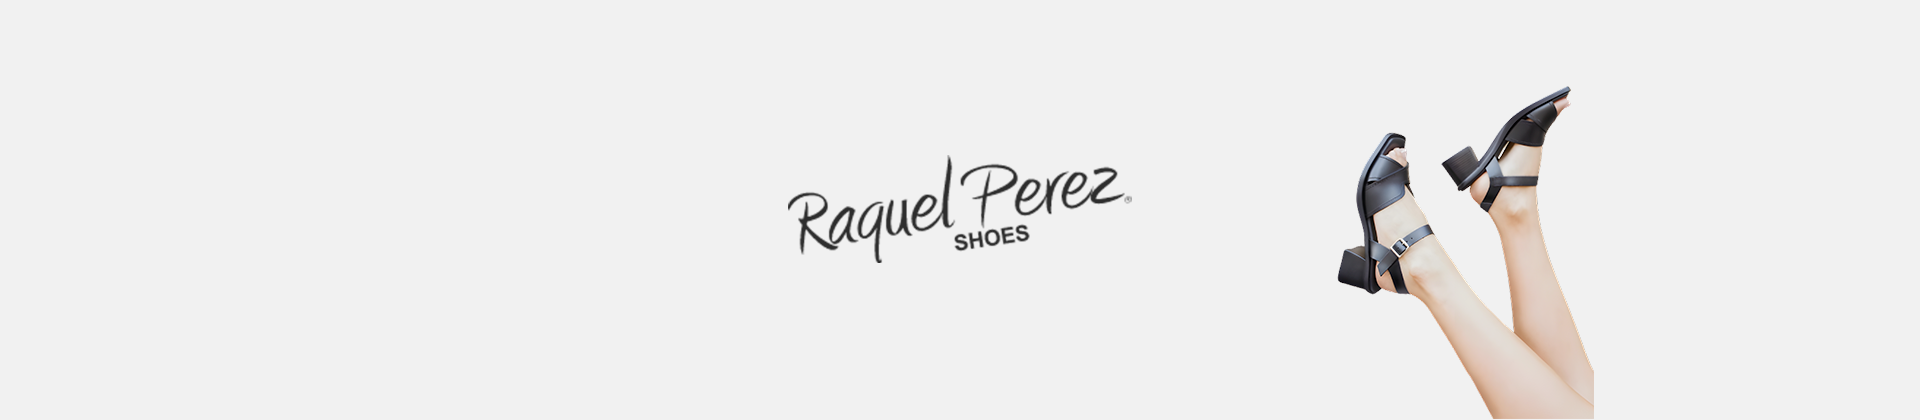 Raquel Perez shoes Sign Online